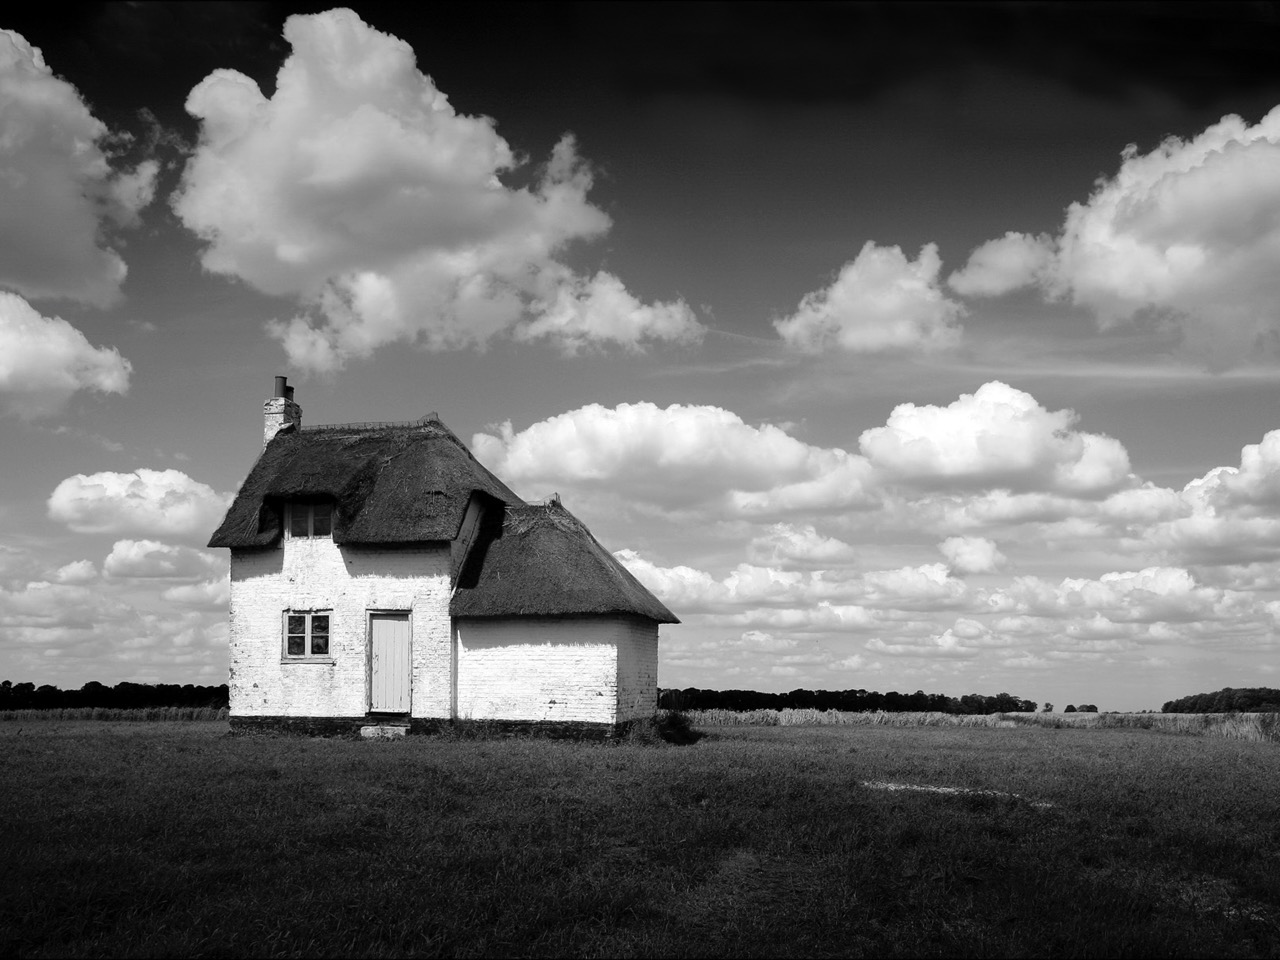 Tecco PFR220 Fotopapier Produktfoto, Weisses Haus auf Wiese mit Himmel in Schwarz-Weiß